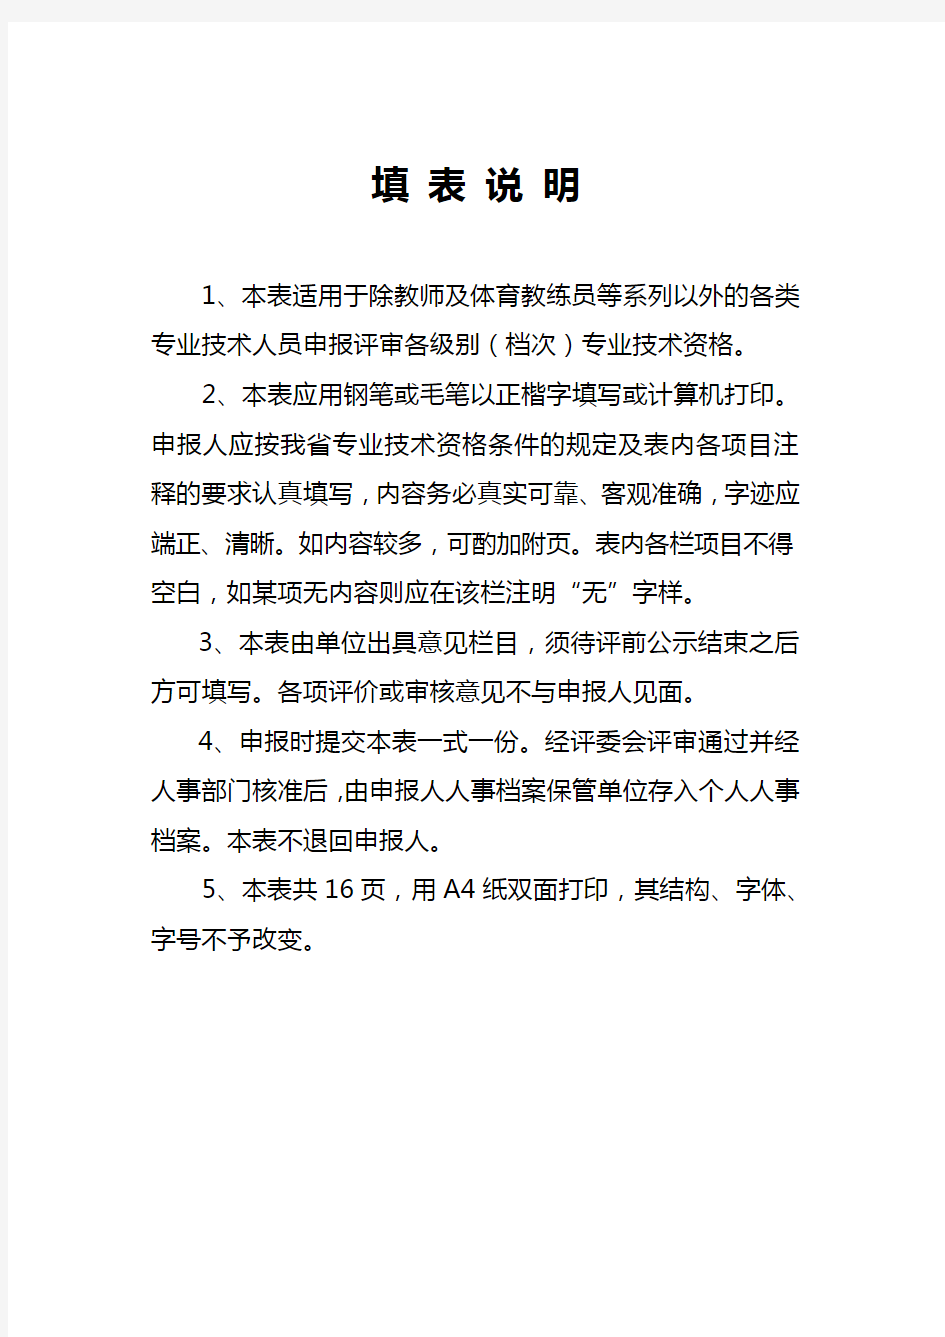 广东省职称评审表(表二)填写范本(建筑、市政路桥专业)